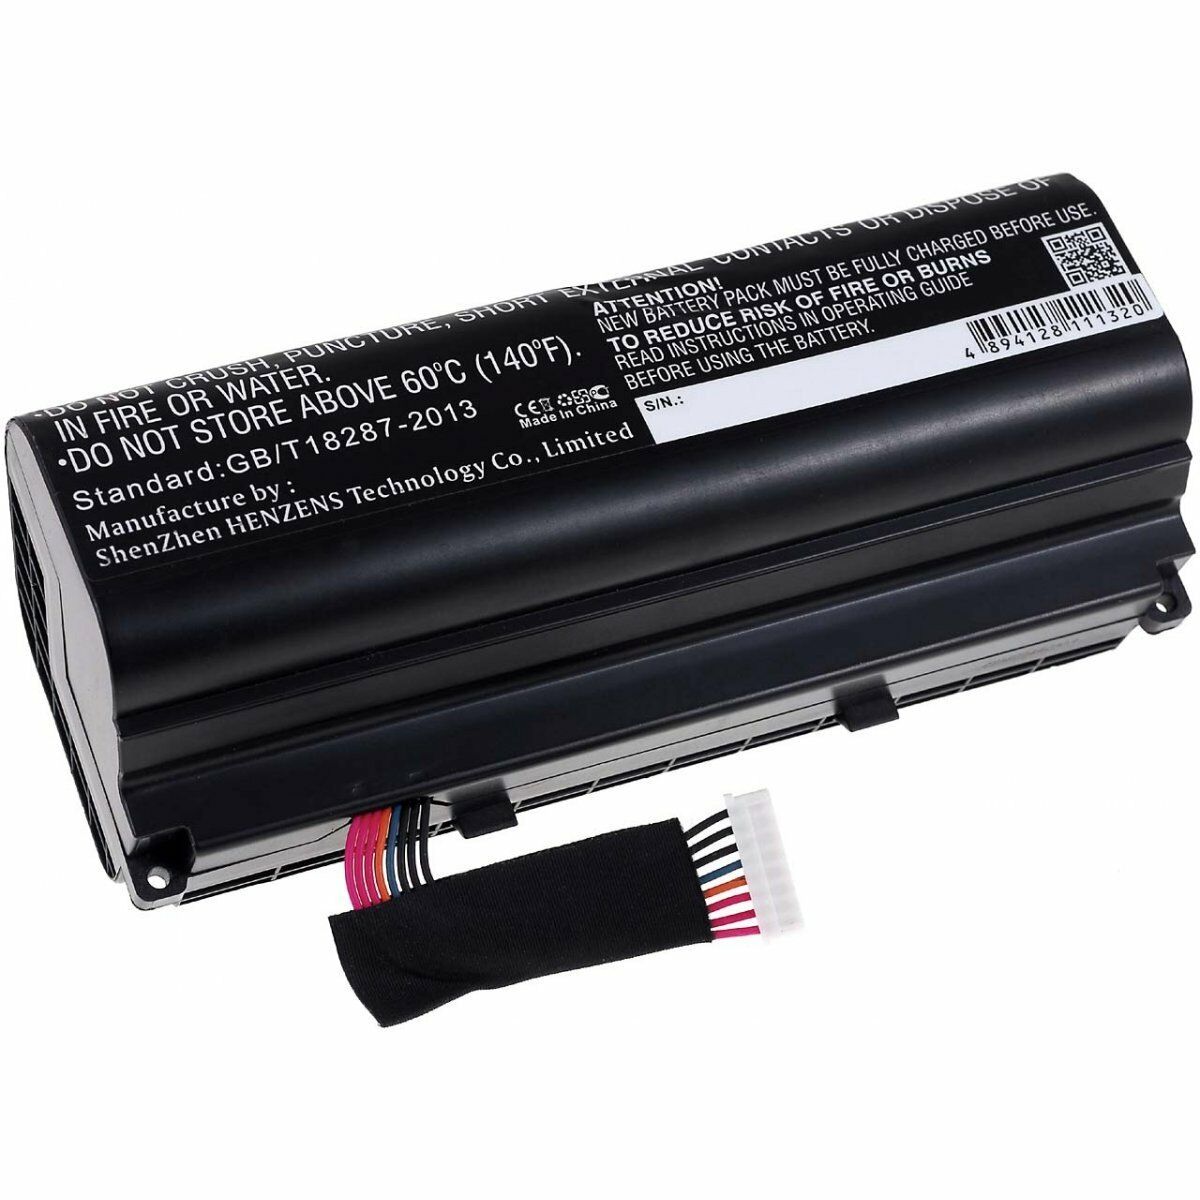 Asus ROG G751JM-T7027H G751JM-T7031H G751JM-T7032H compatible battery